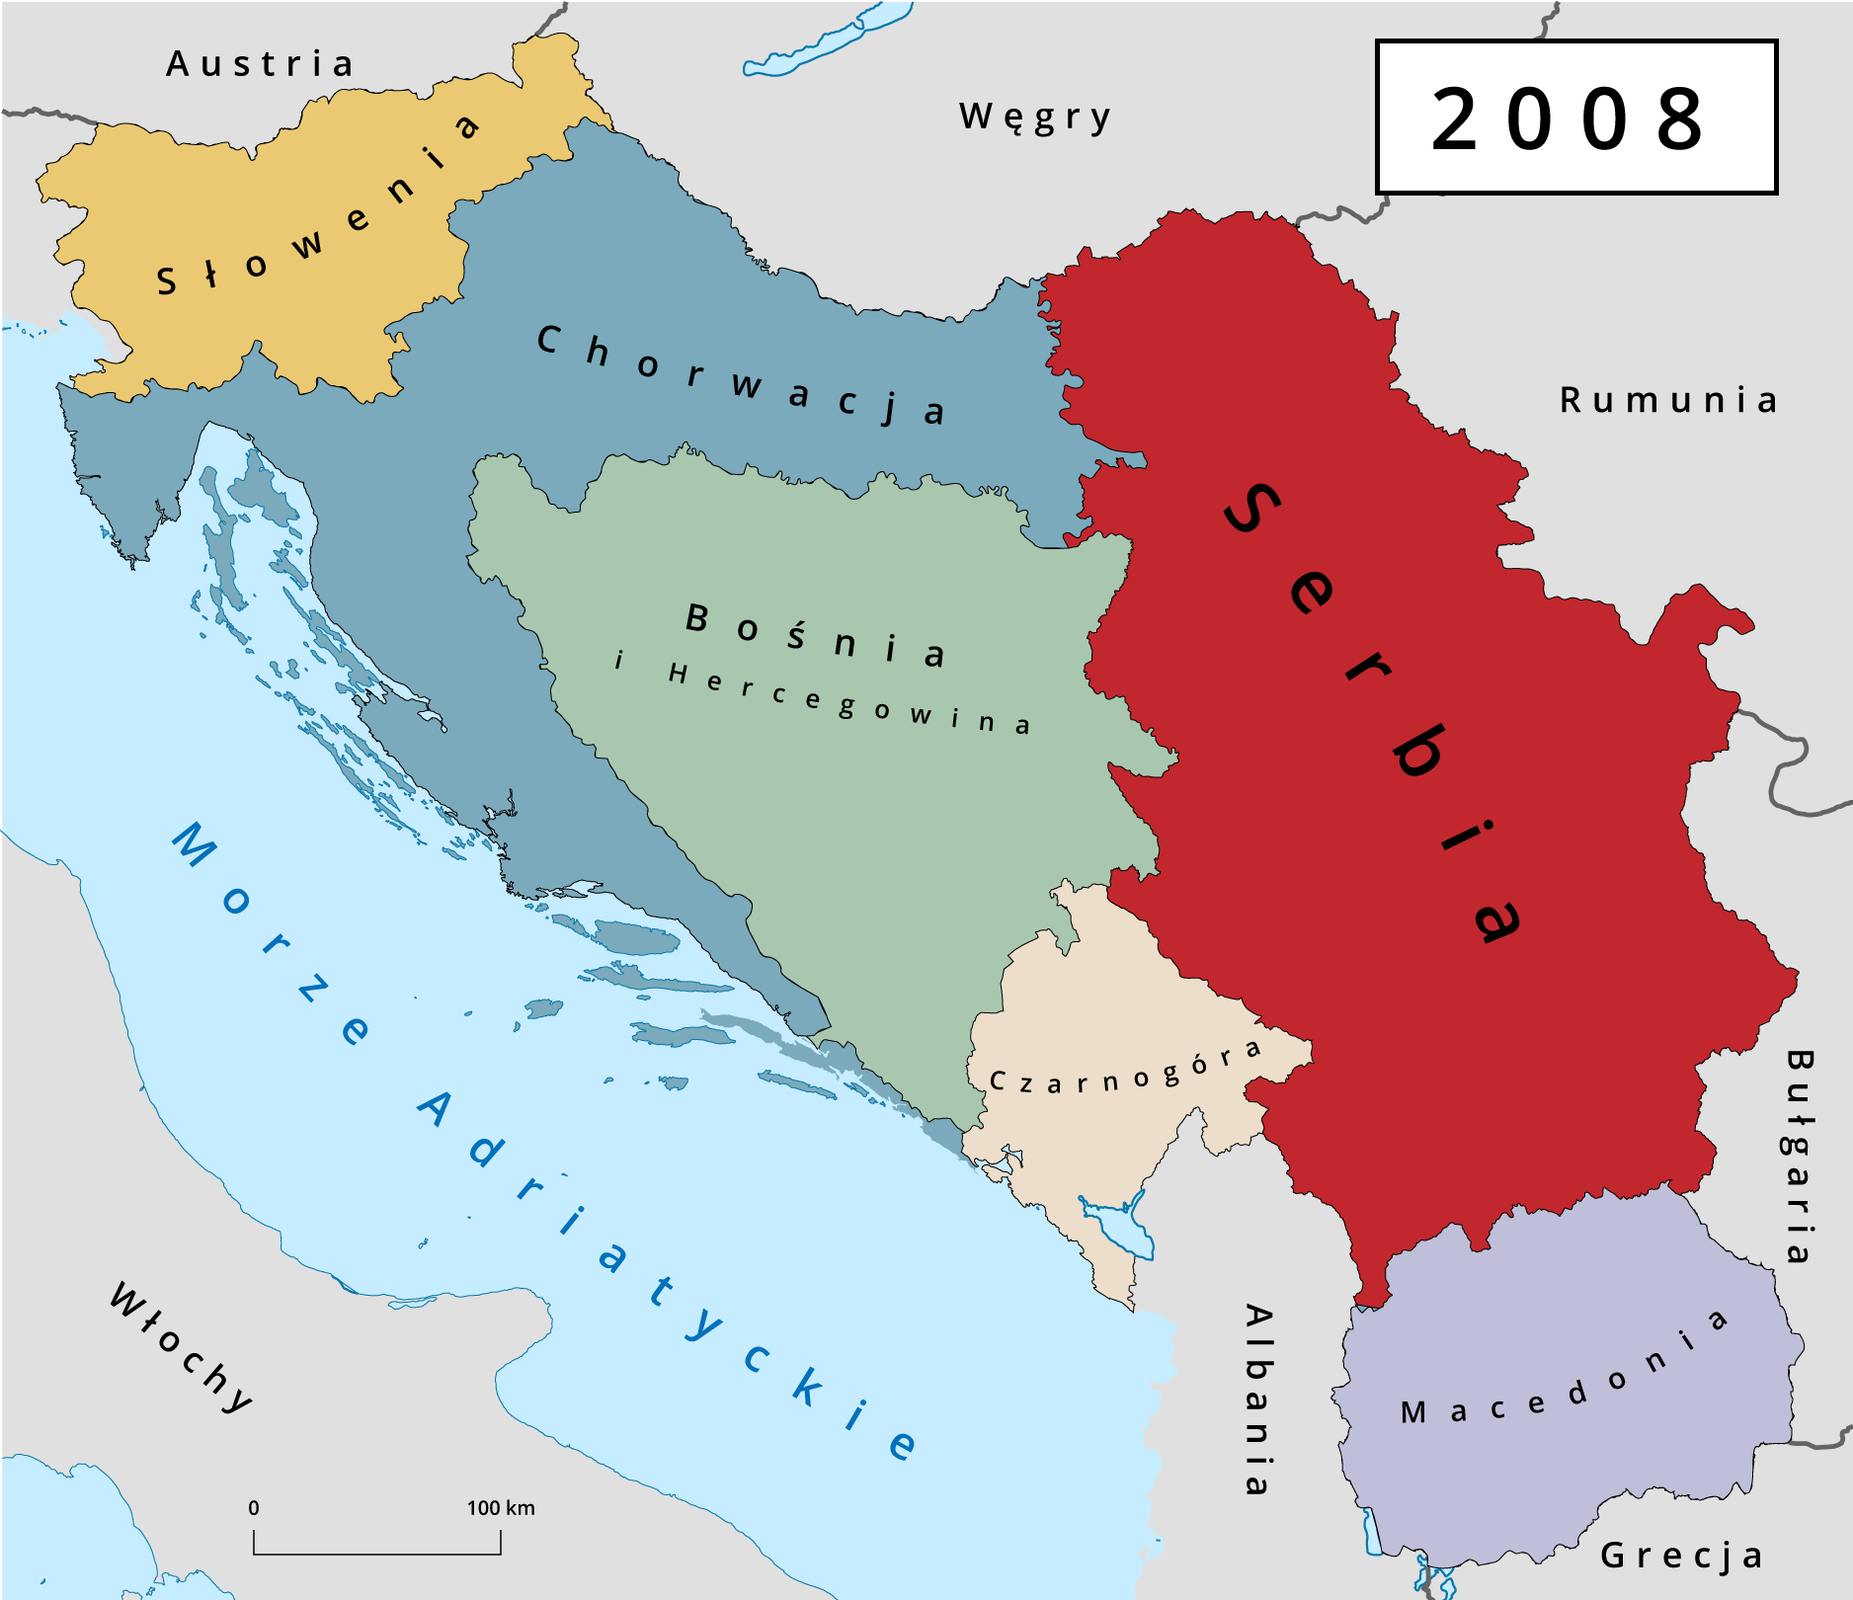  Na ilustracji widać dalszy etap rozpadu Jugosławii w 2008 roku. Od terenu Jugosławii odłączyła się wtedy Czarnogóra - kraj powstały nad Morzem Adriatyckim, leżący na południe od Bośni i Hercegowiny oraz Chorwacji, a na północ od Albanii. Pozostałe ziemie byłej Jugosławii przekształciły się w Serbię. 